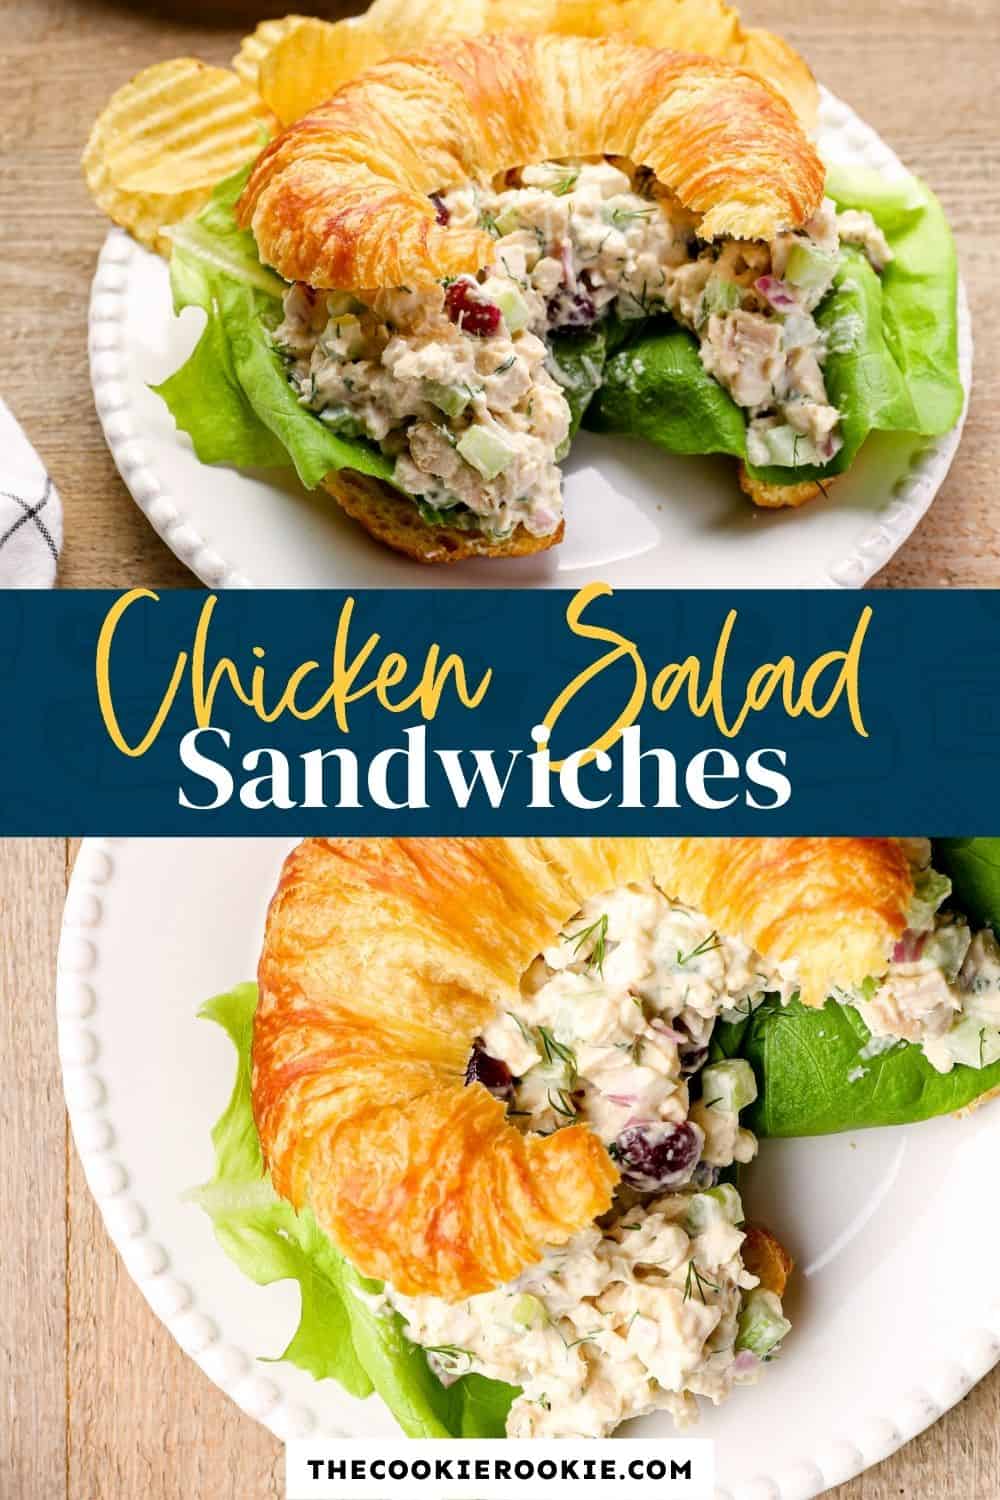 Best Chicken Salad Recipe - The Cookie Rookie®